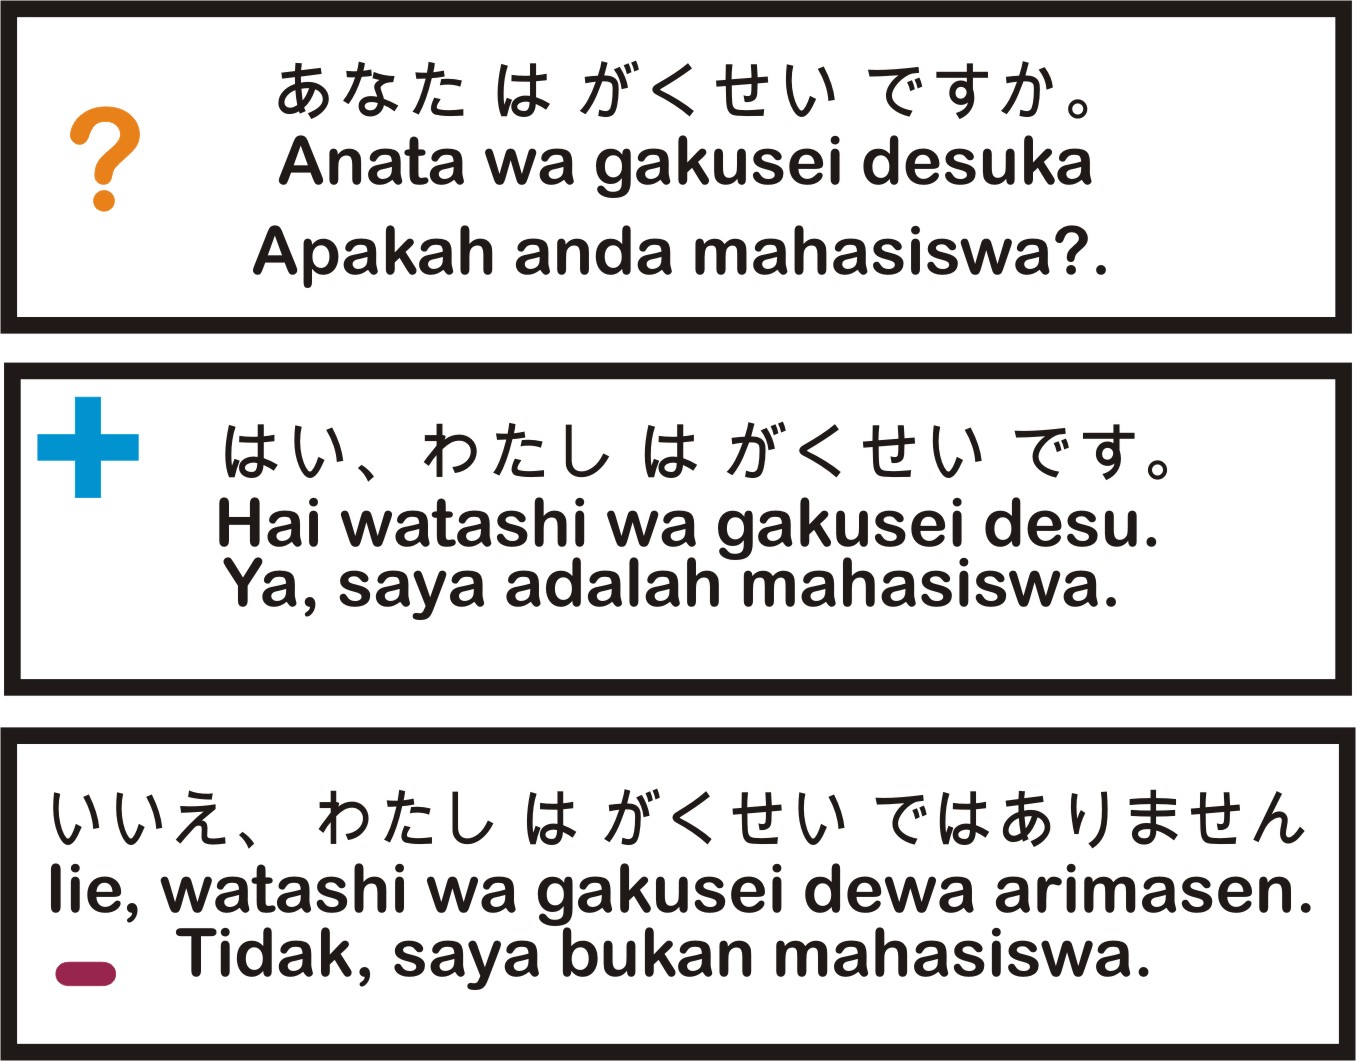 Belajar Bahasa Jepang Sehari Hari Dan Artinya Yang Harus Diketahui